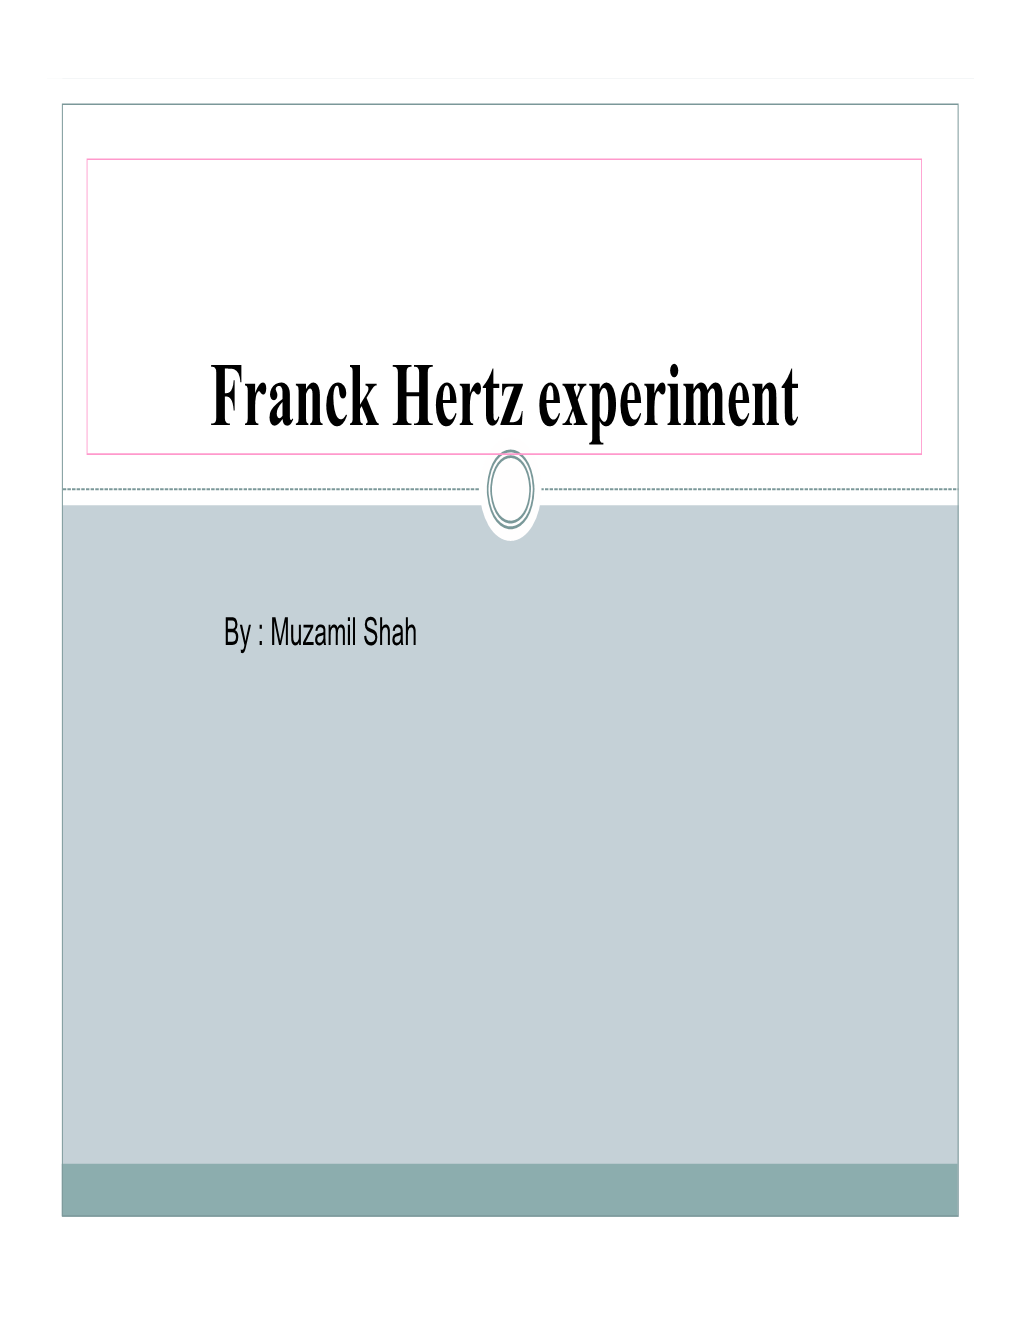 Franck Hertz Experiment